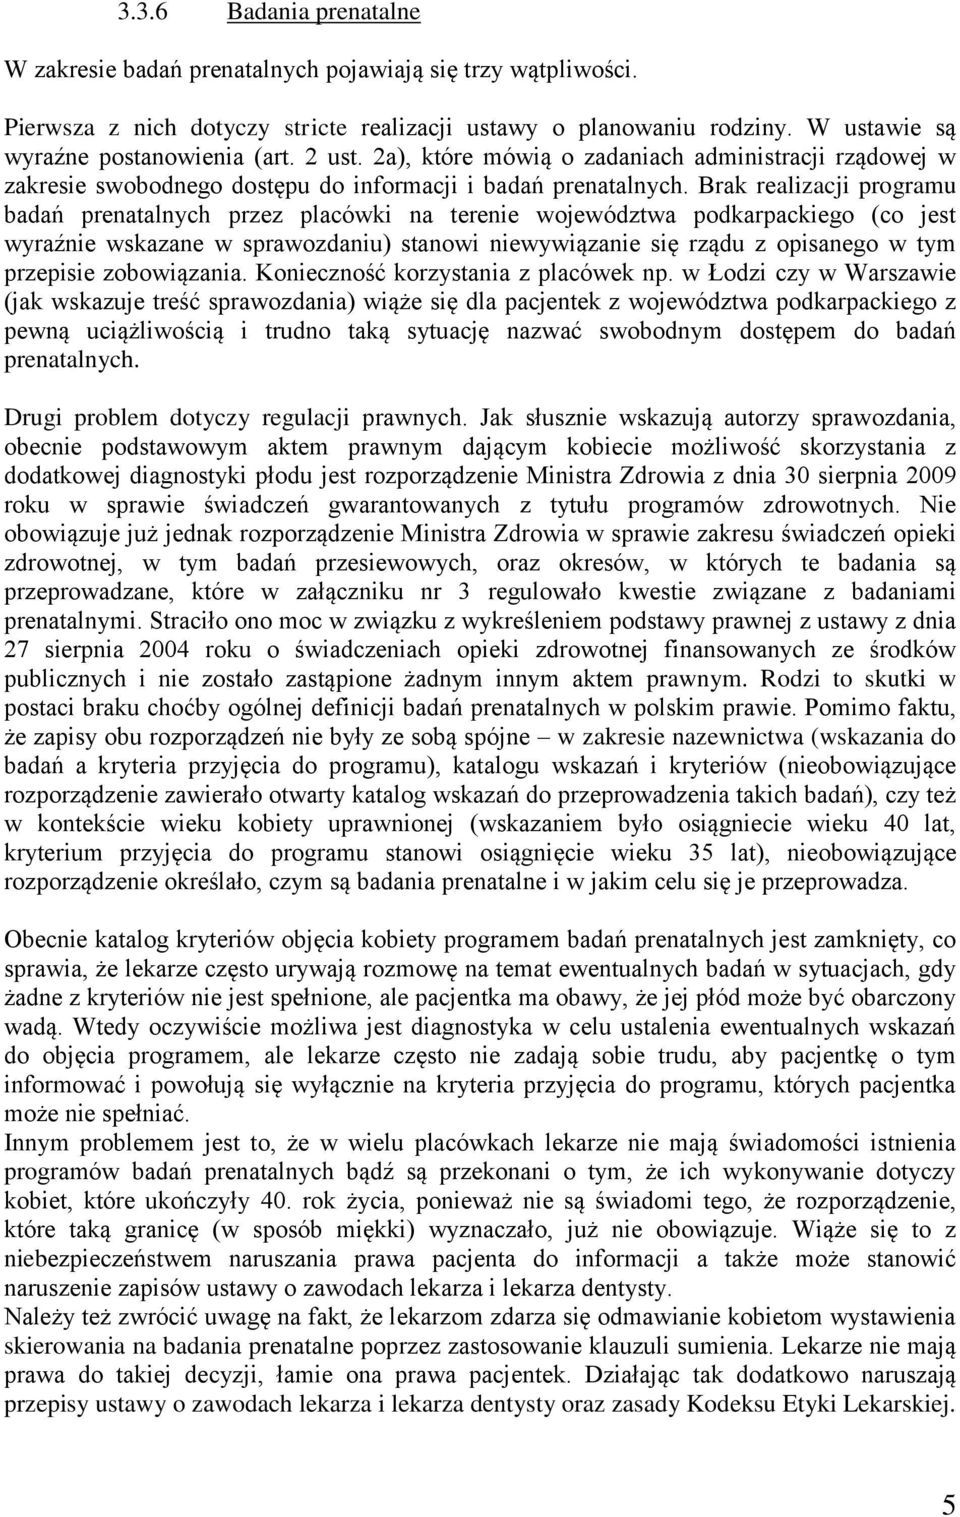 Brak realizacji programu badań prenatalnych przez placówki na terenie województwa podkarpackiego (co jest wyraźnie wskazane w sprawozdaniu) stanowi niewywiązanie się rządu z opisanego w tym przepisie